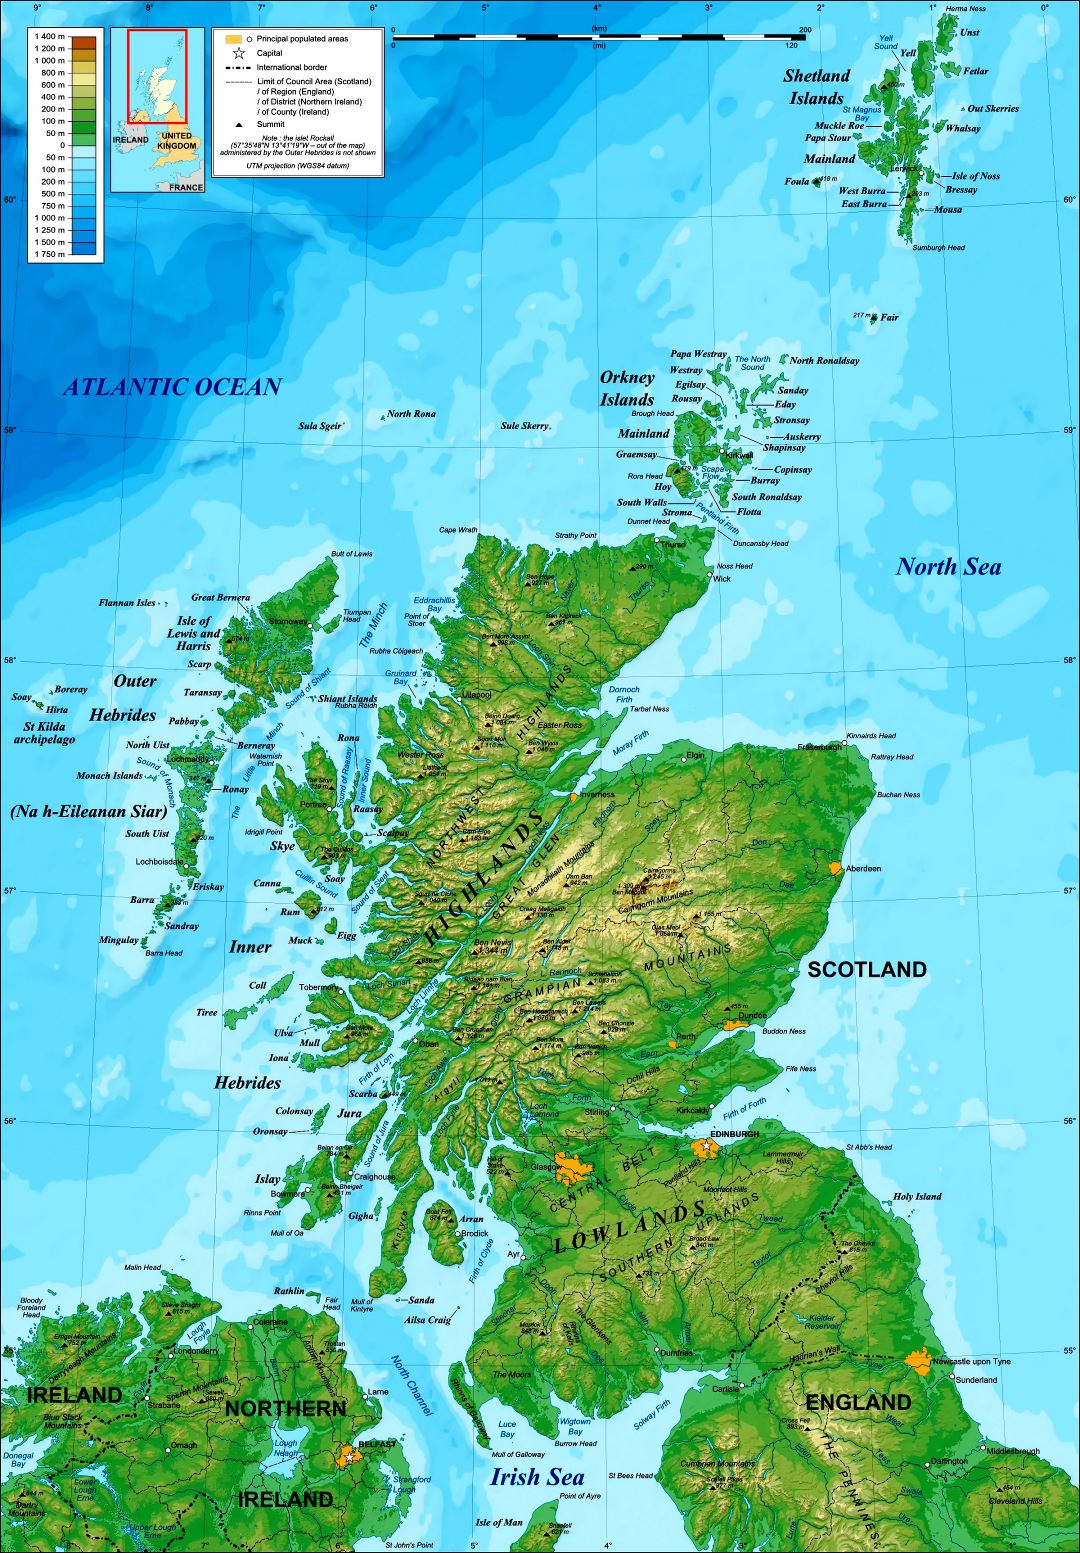 Grande detallado mapa topográfico de Escocia